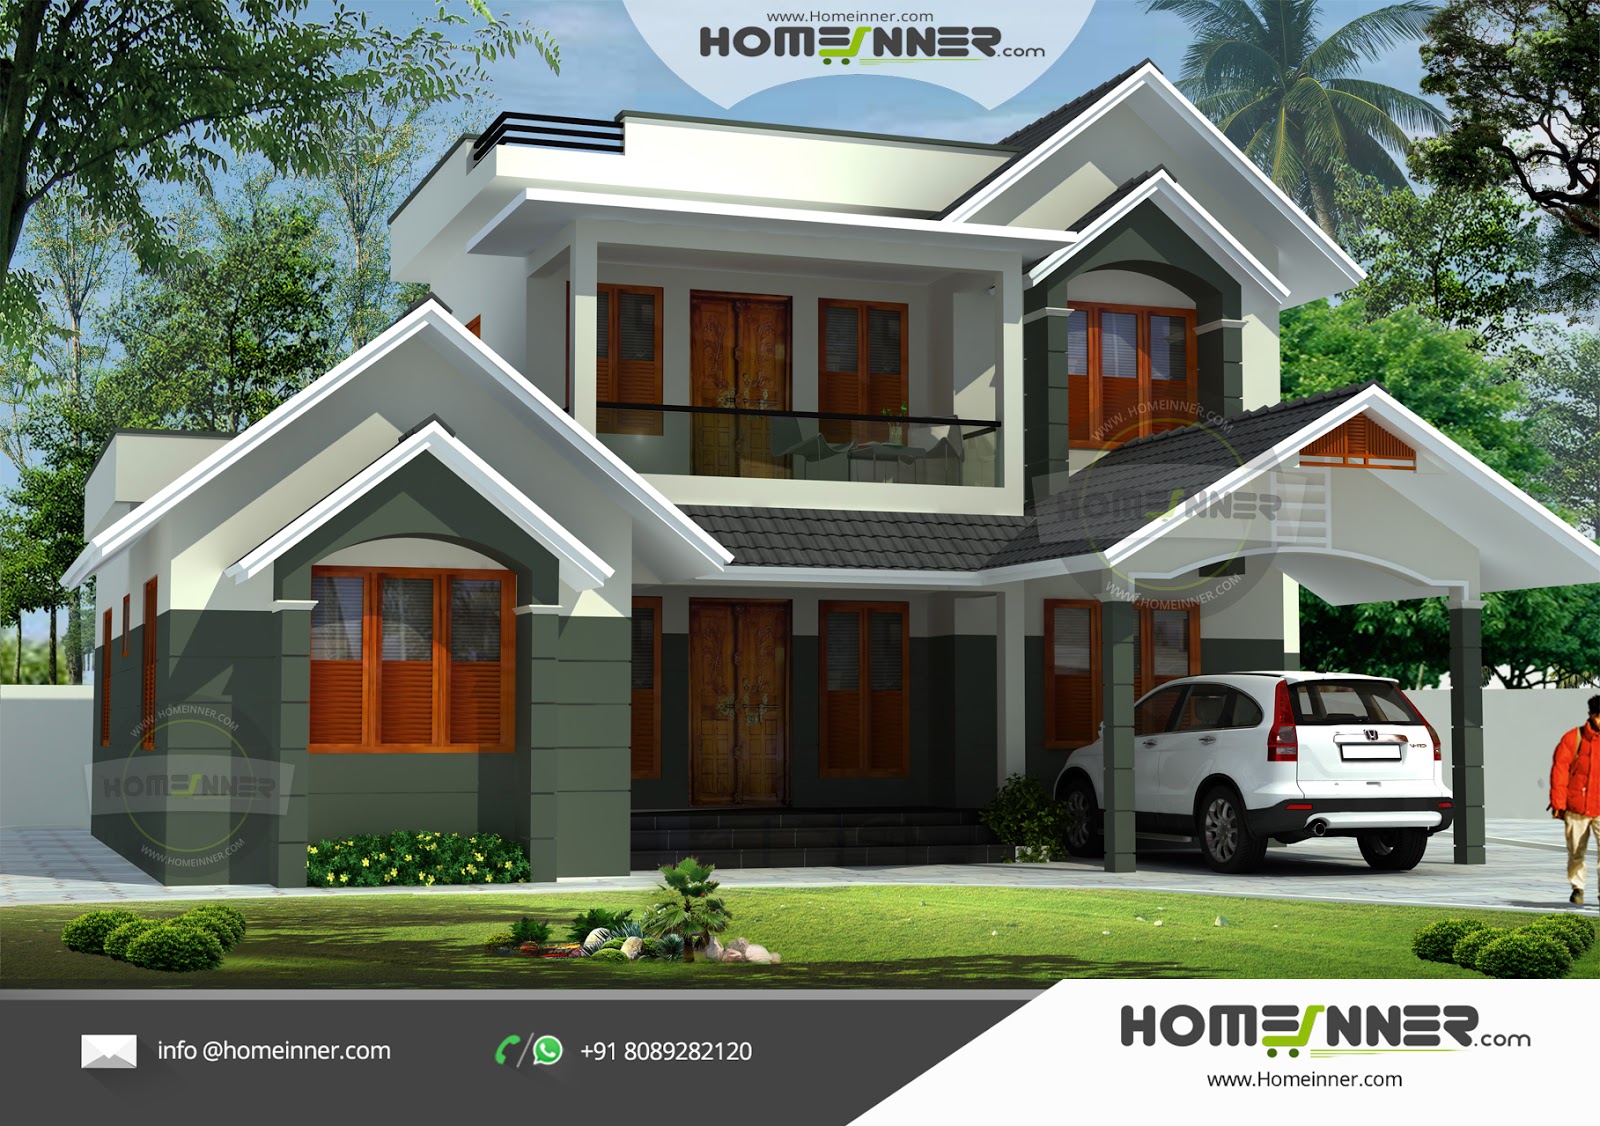  Indian Small Farmhouse Plan 3 Bhk Kerala House Design 